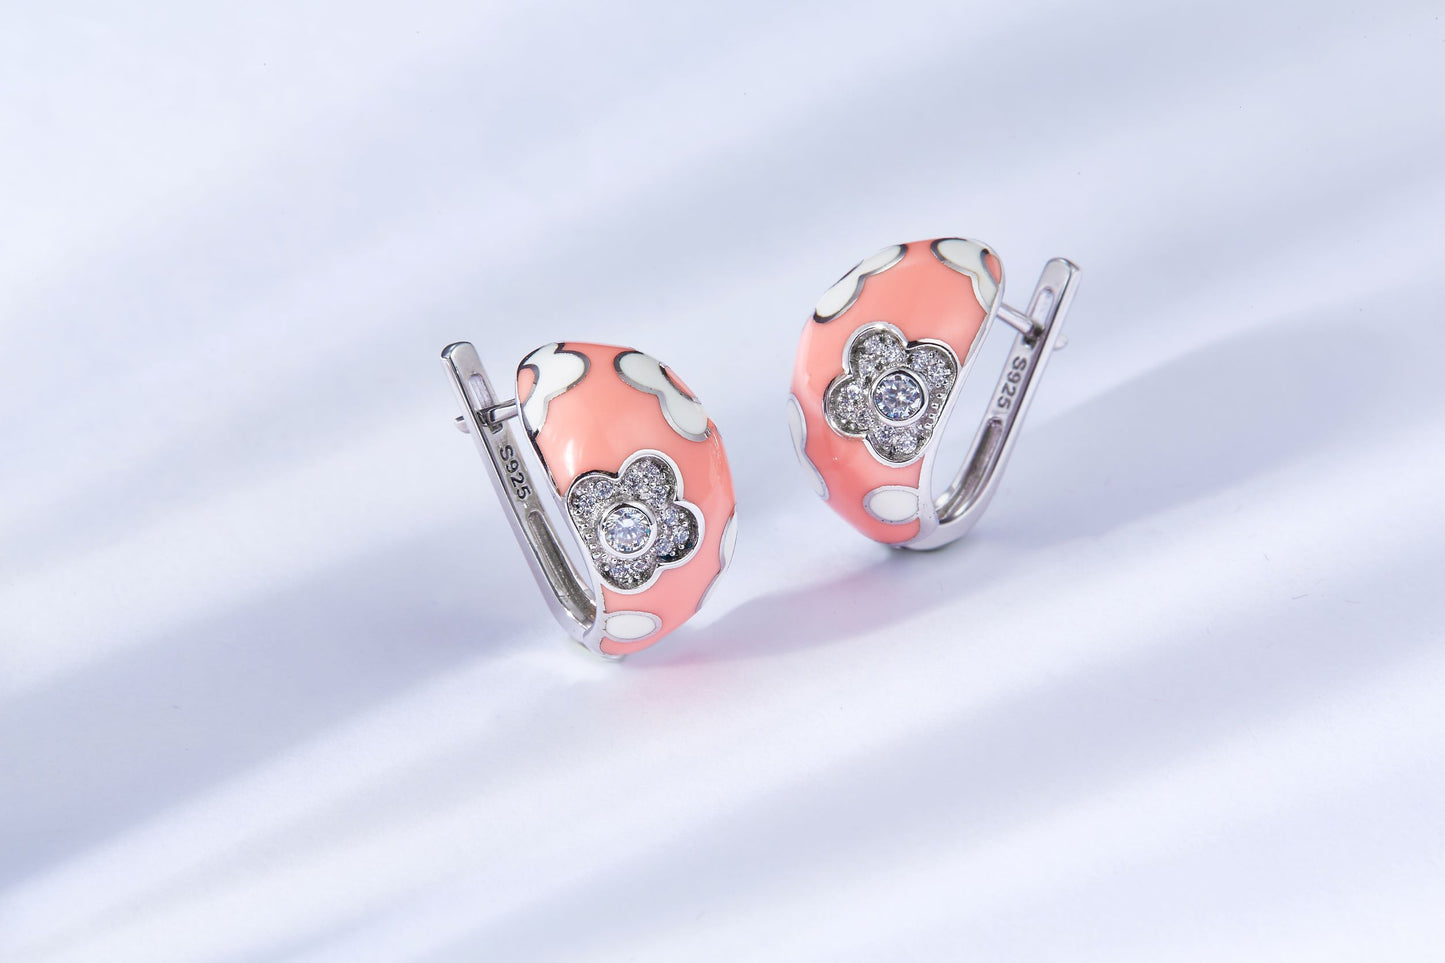 Pinkful Flower Enamel Silver Studs Earrings for Women